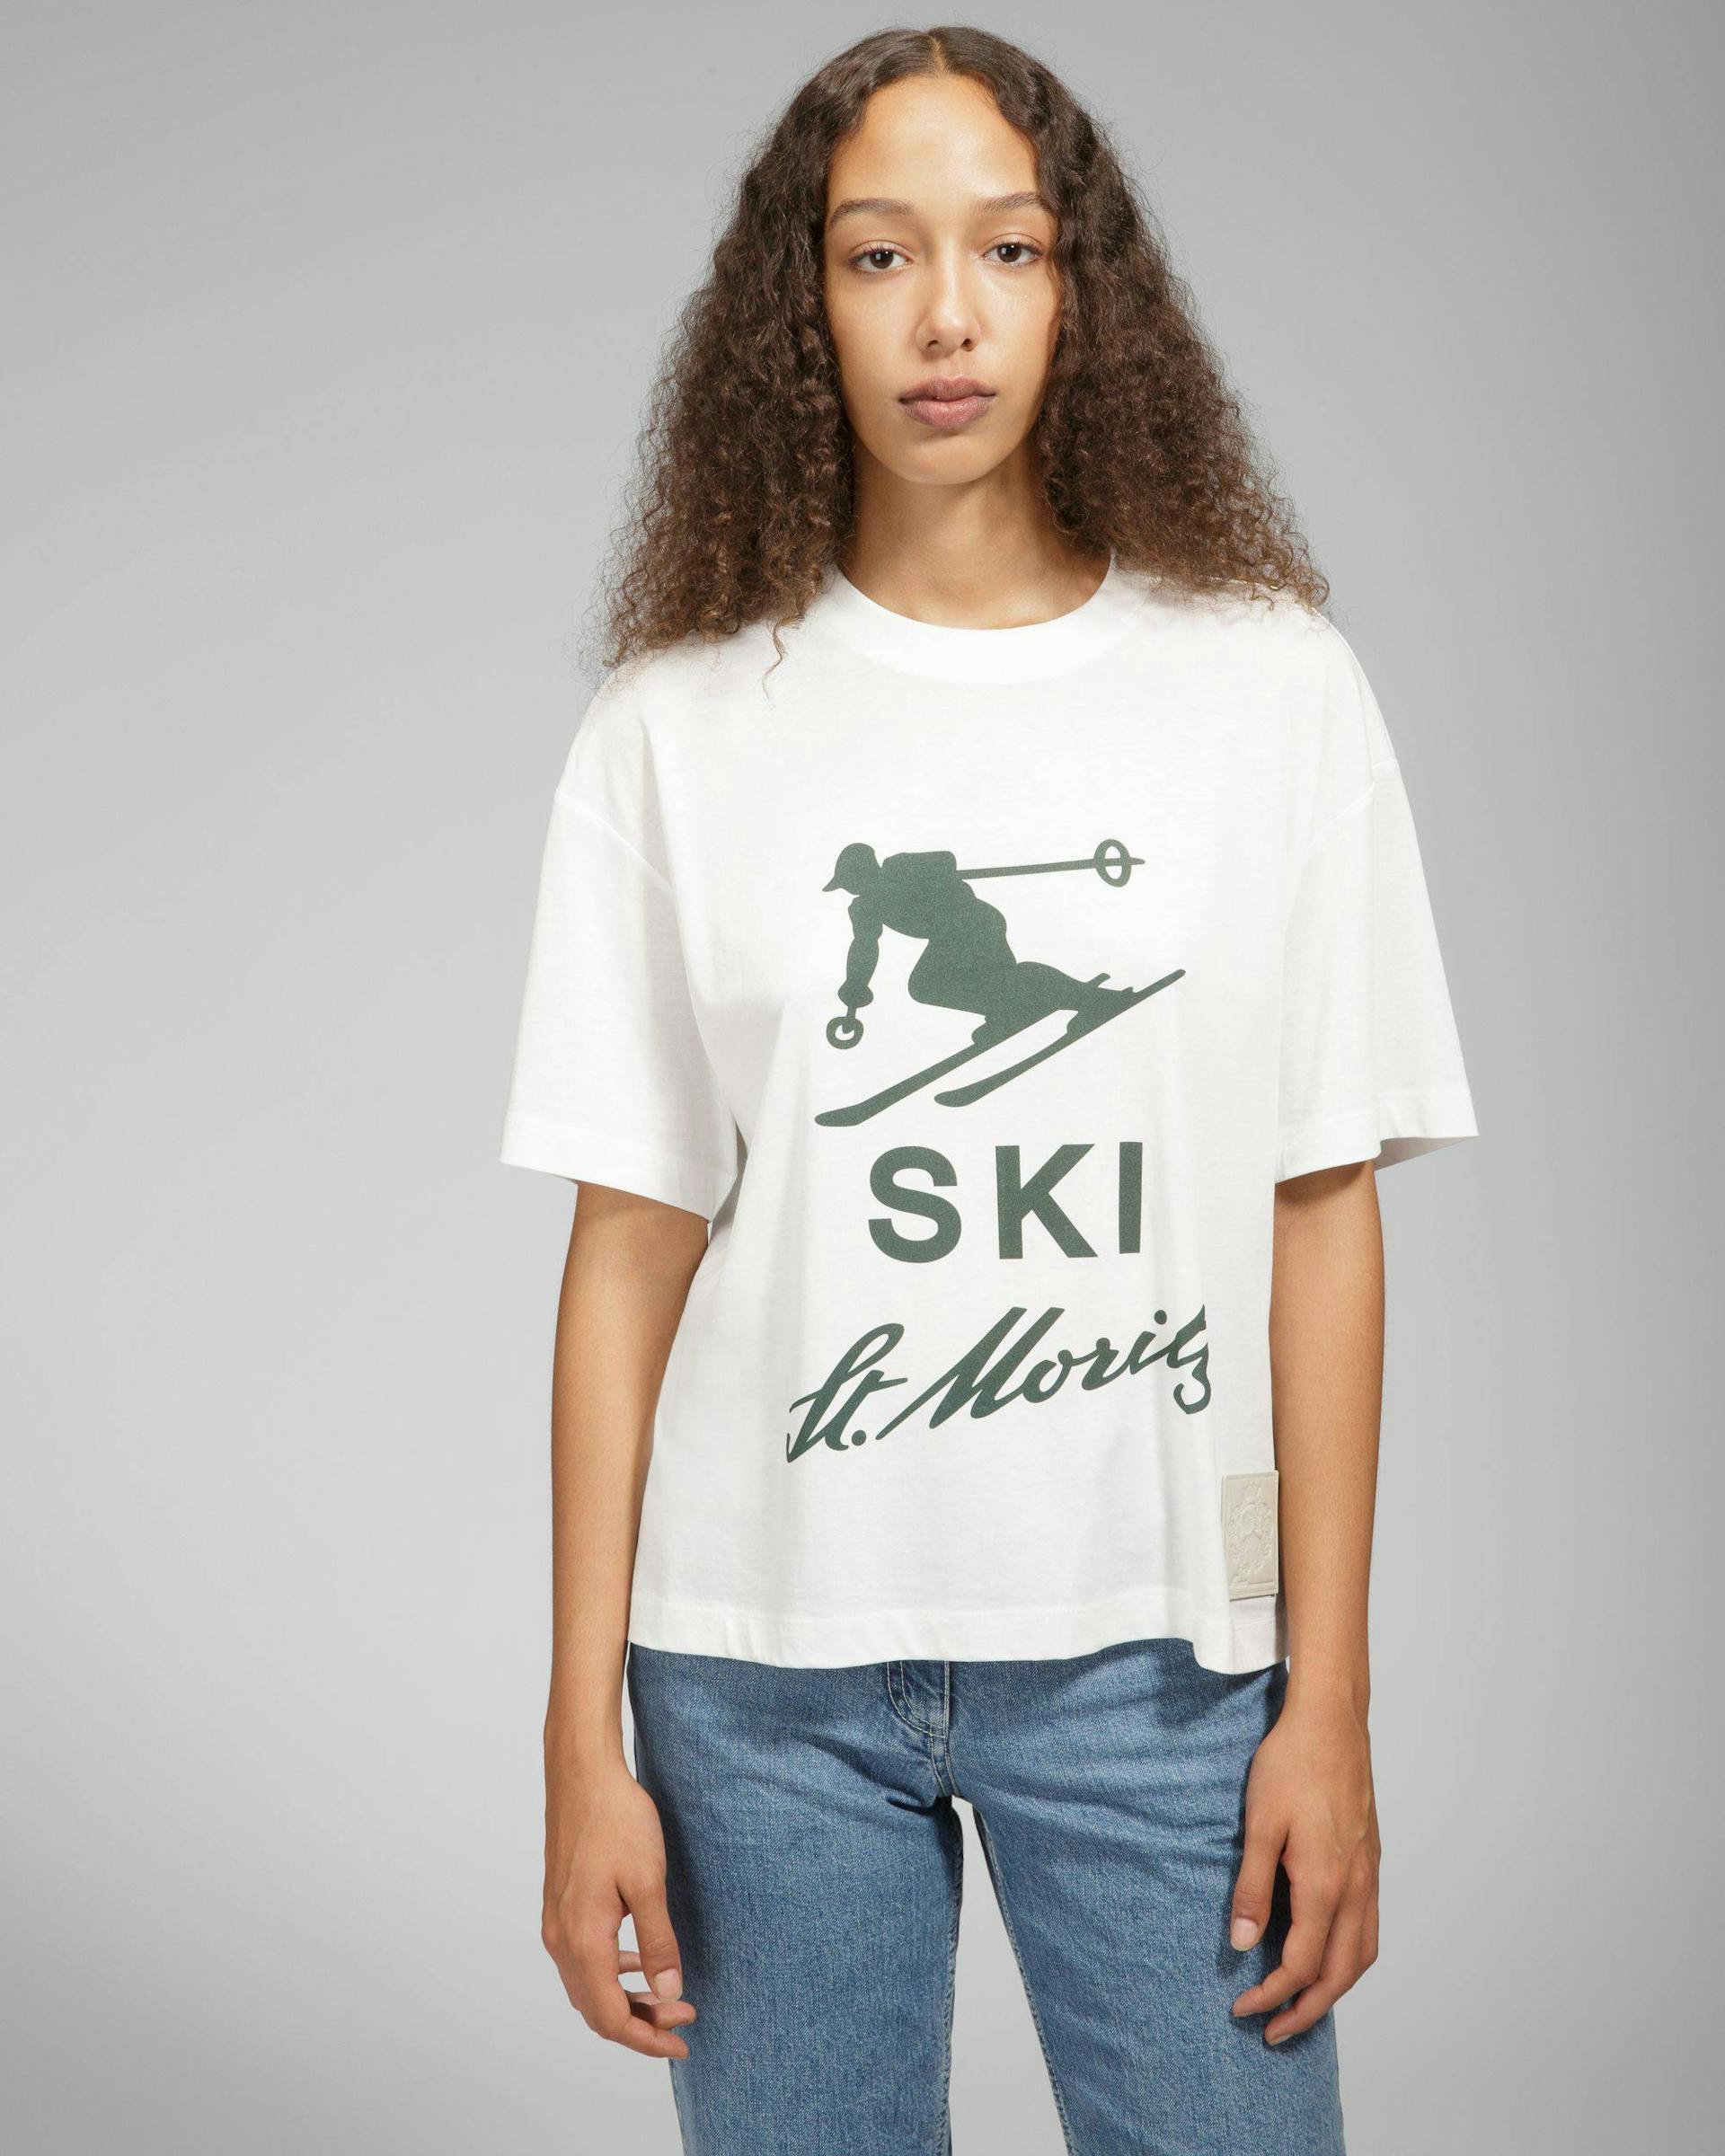 T-shirt Ski St Moritz - Homme - Bally - 01